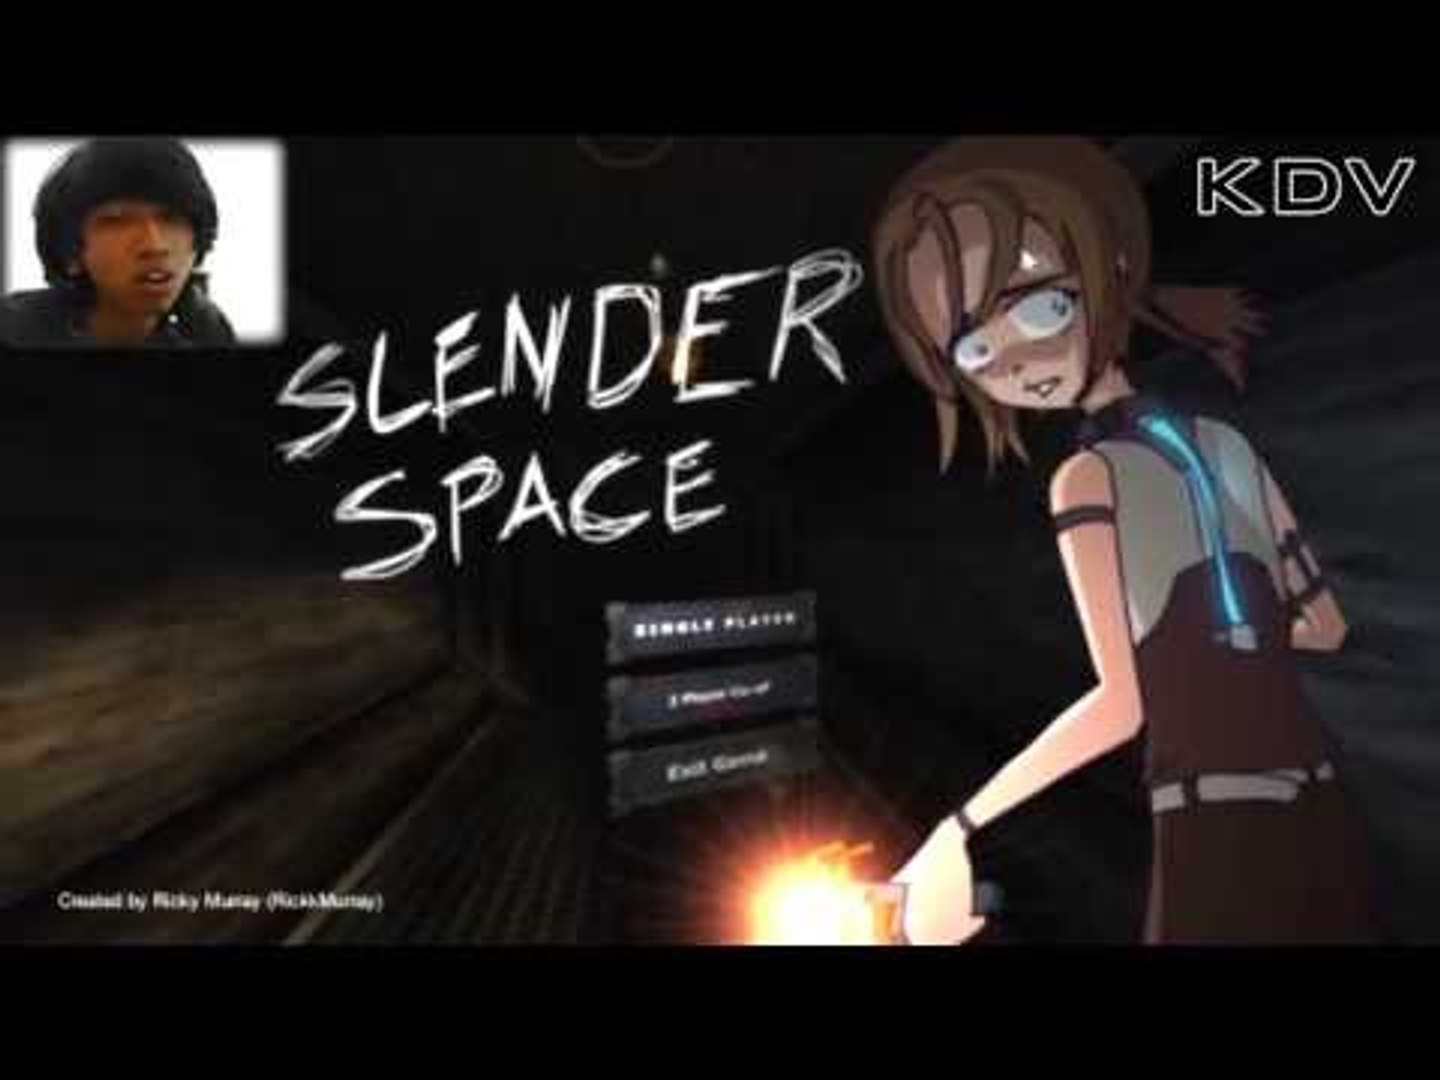 SLENDERMAN IS BACK - ROBLOX - Stop it, SLENDER 2! (Facecam) - video  Dailymotion